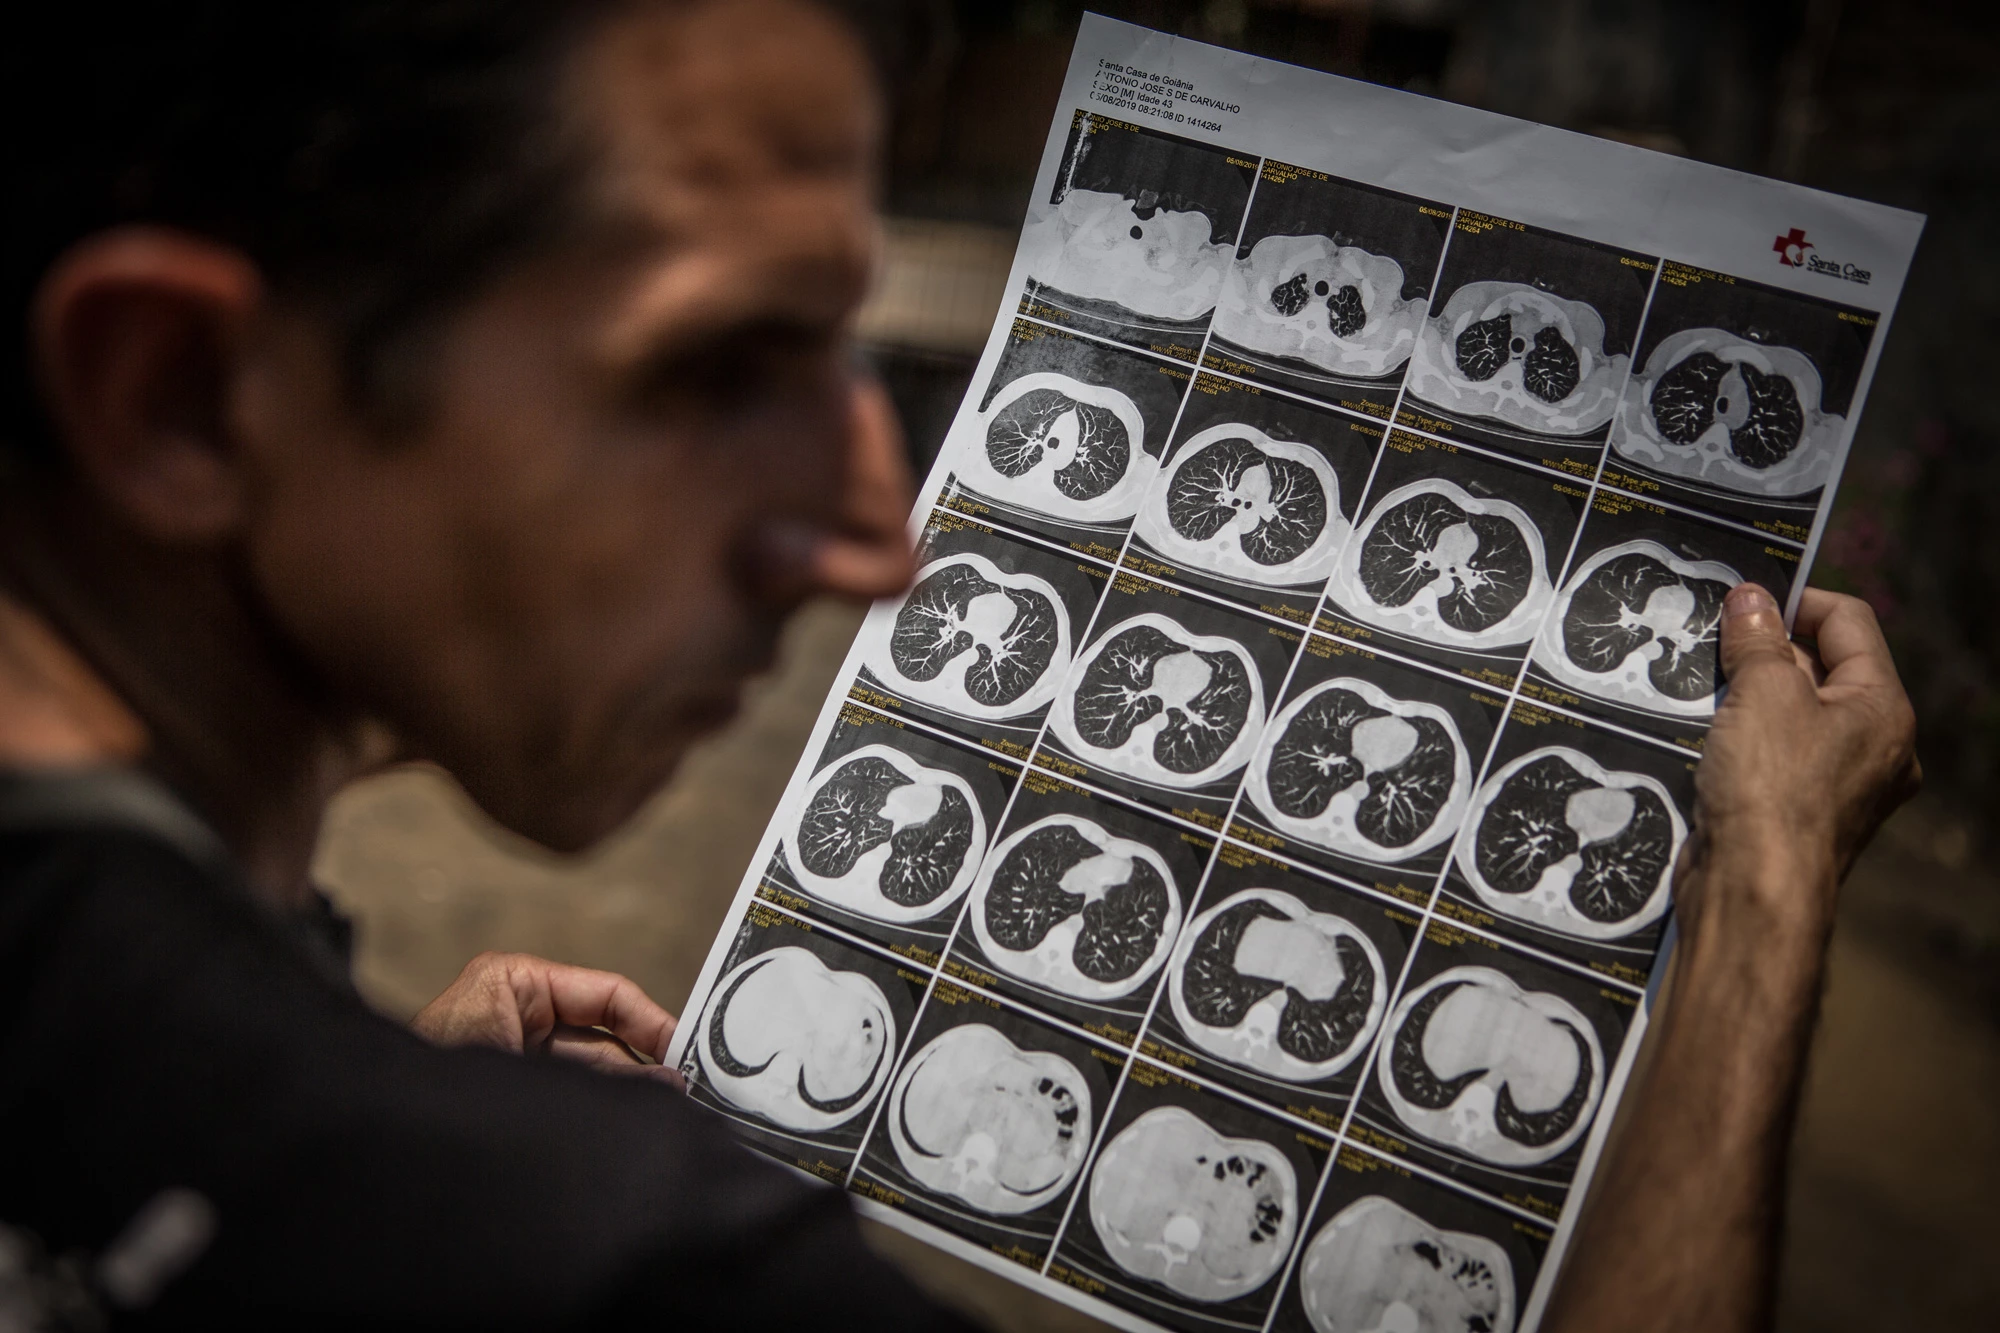 Antonio José Severino de Carvalho, de 44 anos, ex-funcionário da mineradora Sama, mostra seus exames mostrando resultados da abestose em seus pulmões.